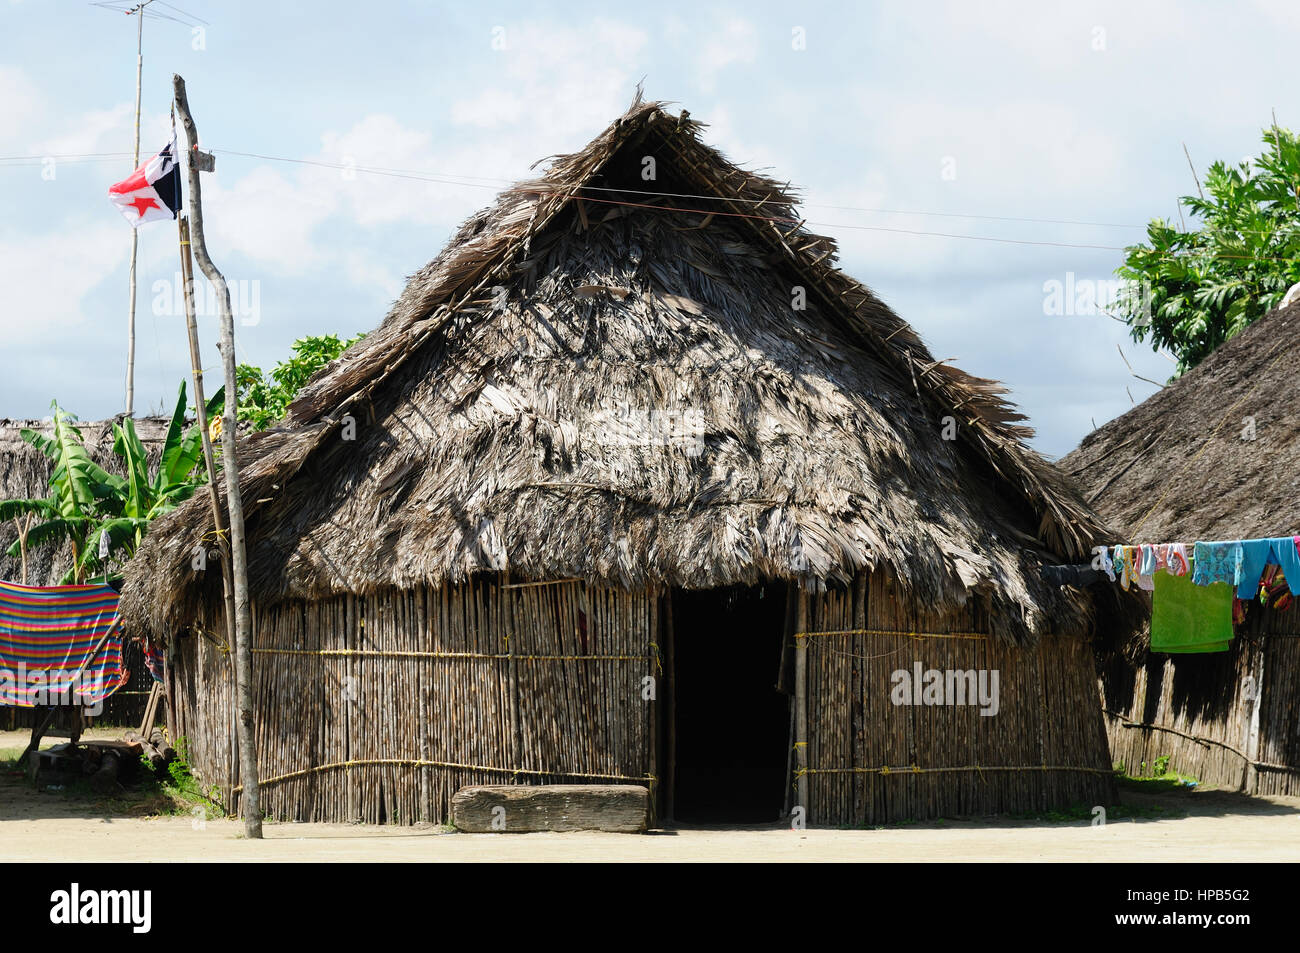 Panama, casa tradizionale kuna indiani con il tetto con il tetto di paglia su una tigre isola del San Blas arcipelago Foto Stock